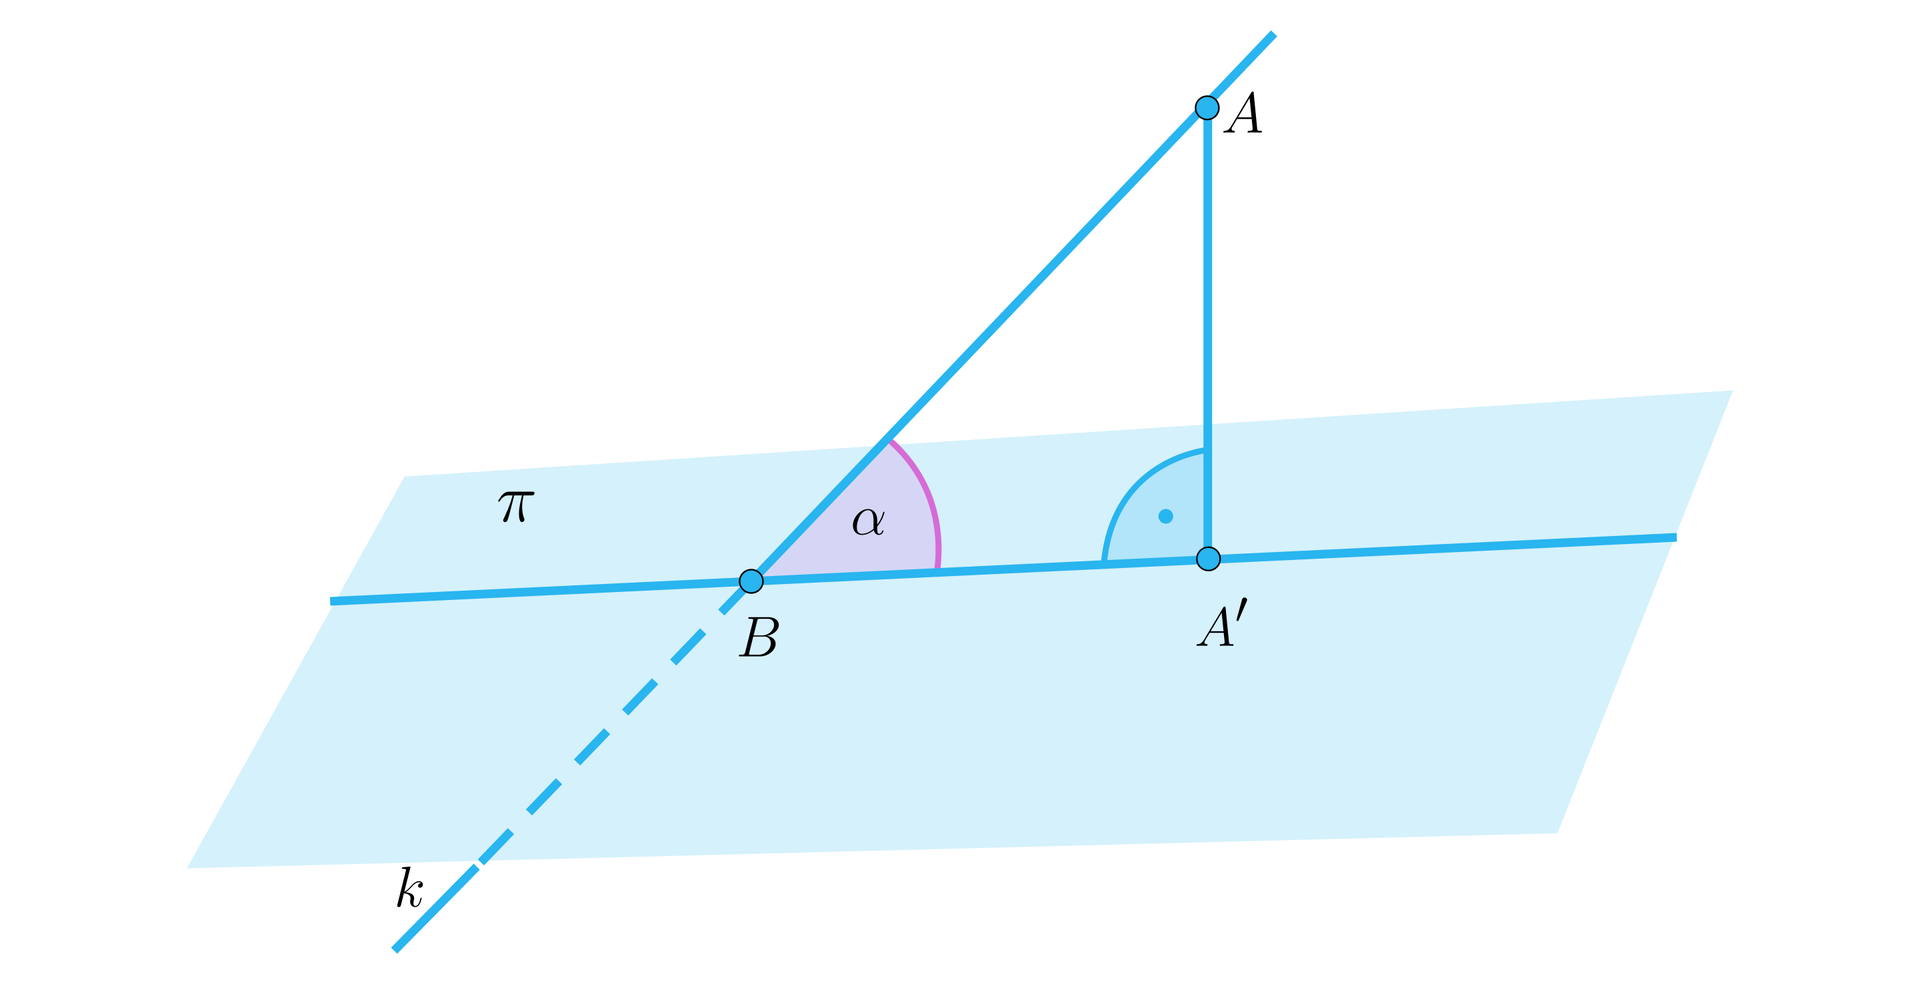 Na ilustracji przedstawiono płaszczyznę pi, na której zaznaczono prostą p. Zaznaczono także prostą k, która przecina płaszczyznę w punkcie B na prostej p, pod kątem alfa. Na prostej k zaznaczono punkt A, który zrzutowano na prostą p pod kątem prostym, i na prostej p zaznaczono punkt A prim.